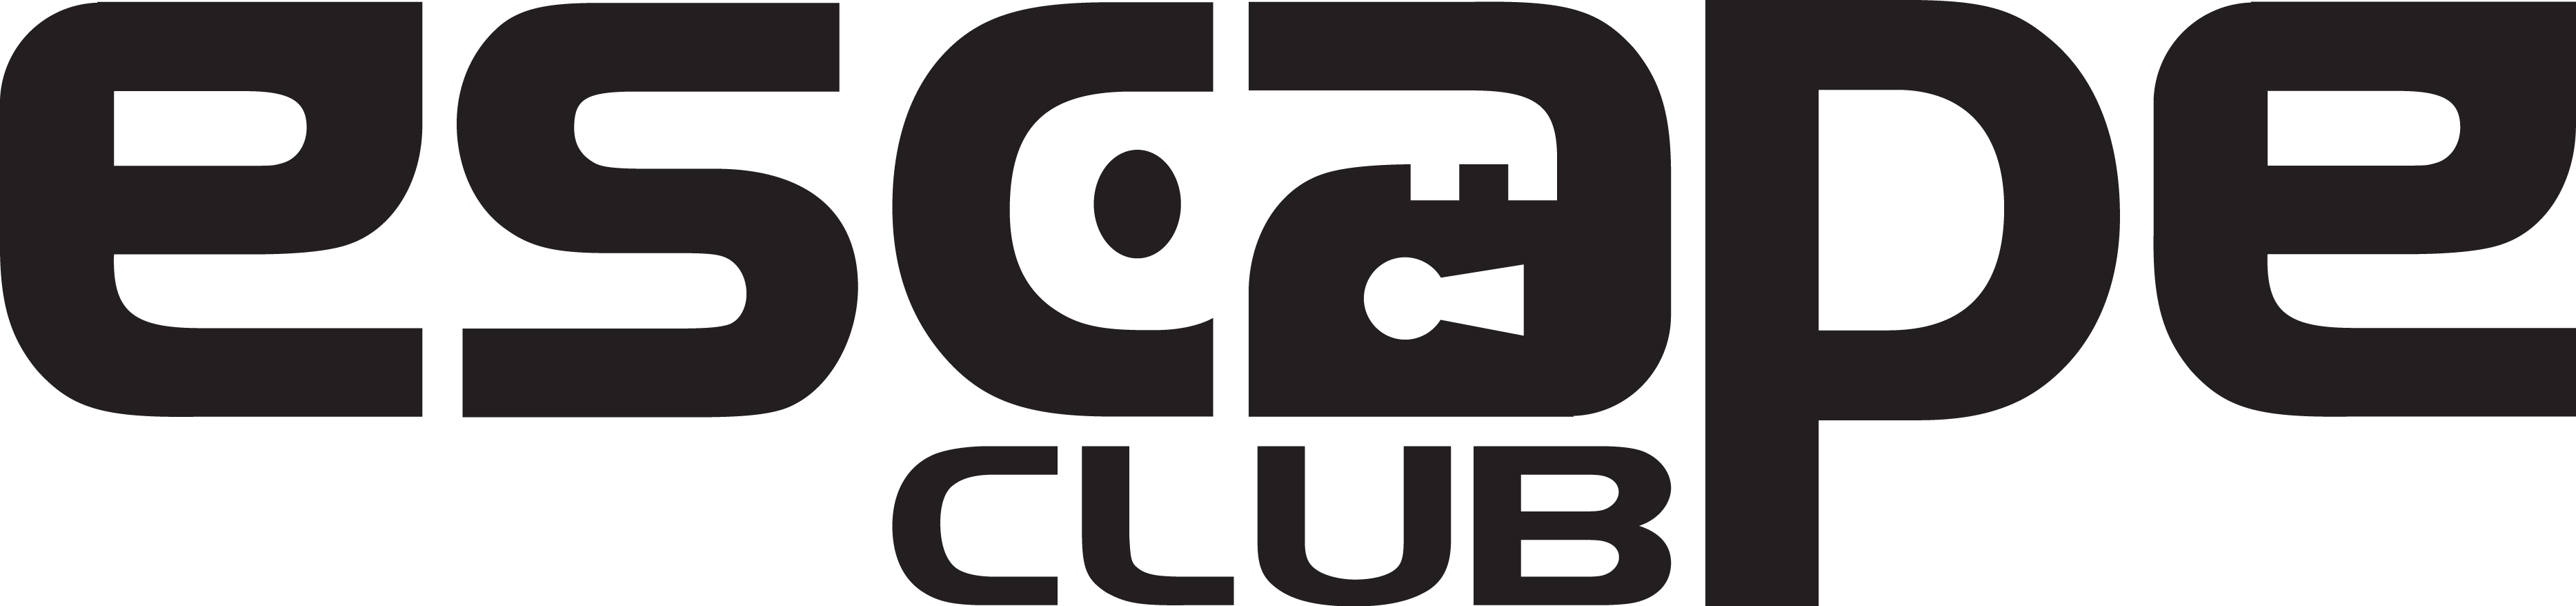 Escape Club YQR logo